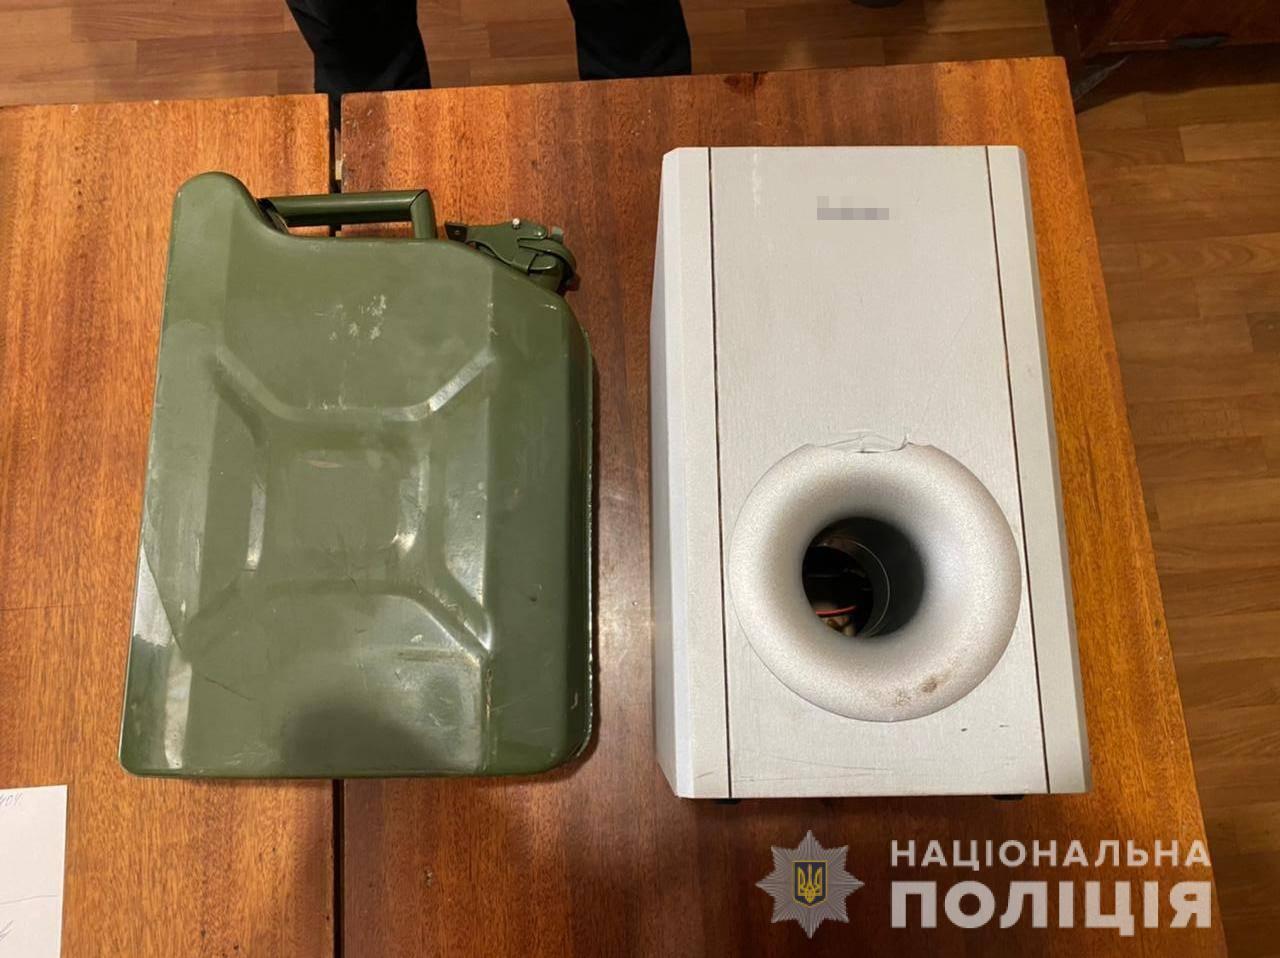 Поліцейські викрили 20-річного жителя Подільського району в крадіжках із будинків односельців